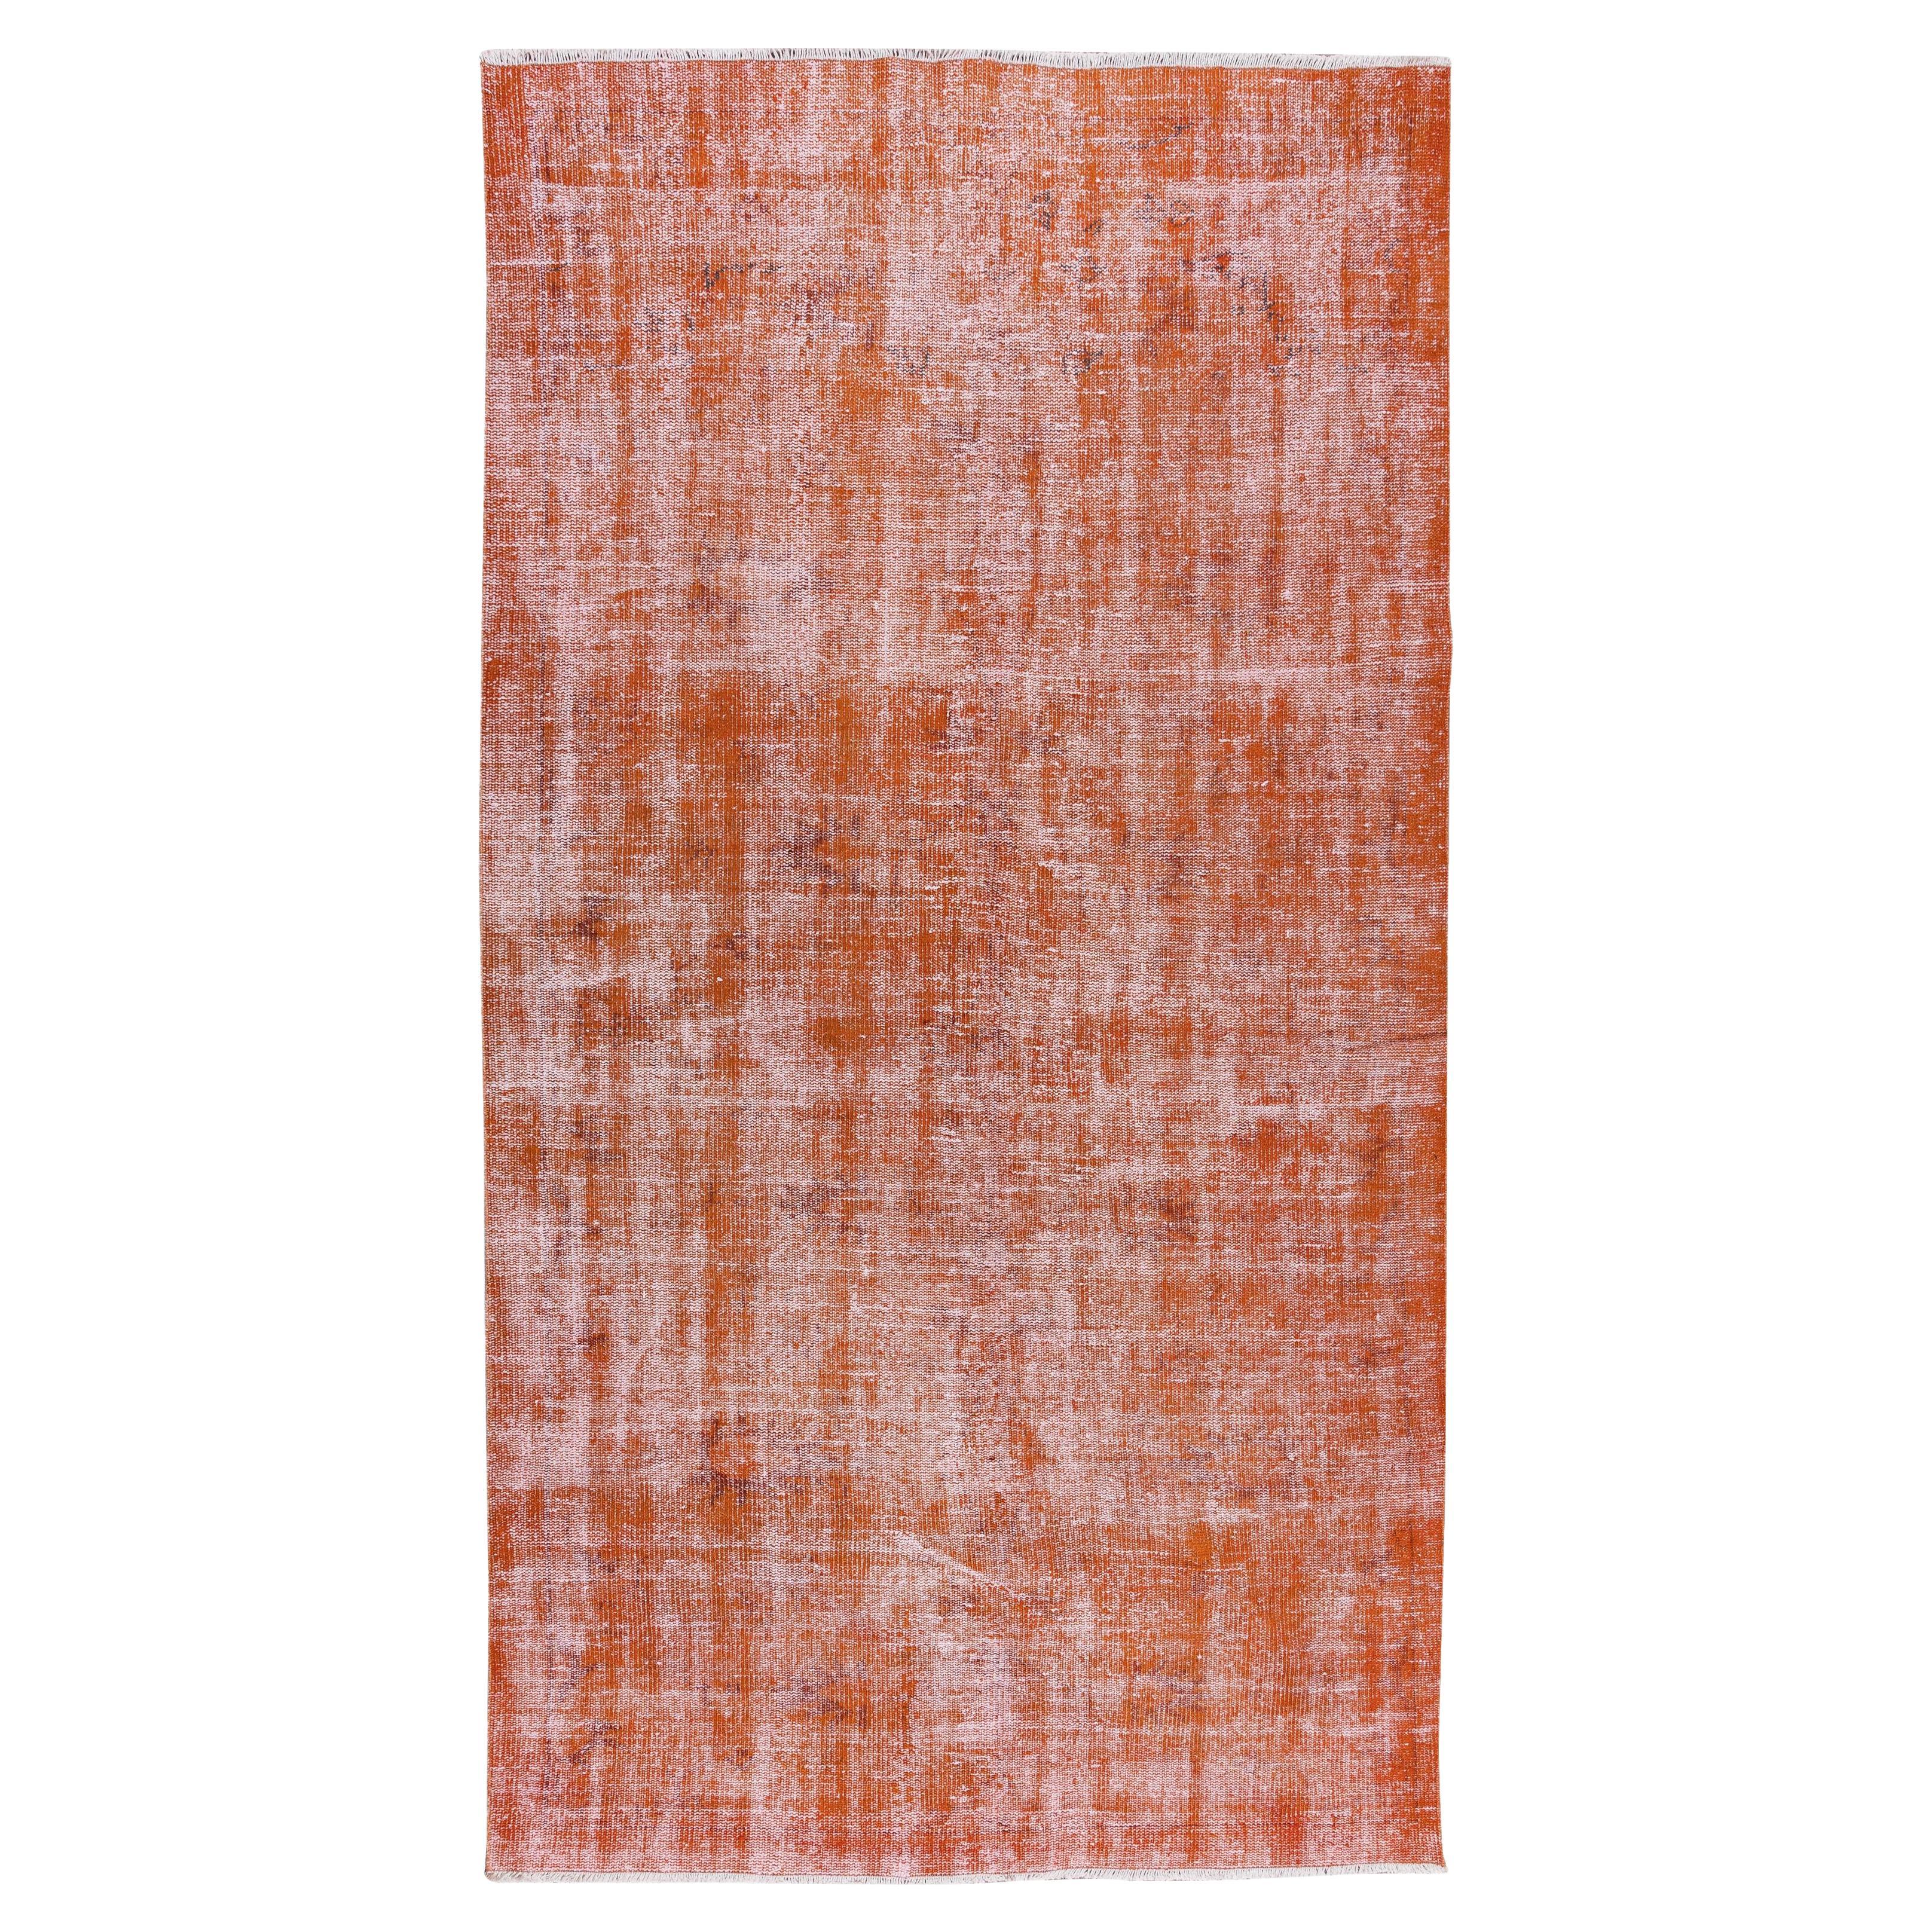 Tapis turc vintage noué à la main 5,3 x 9,6 m, tapis orange vieilli